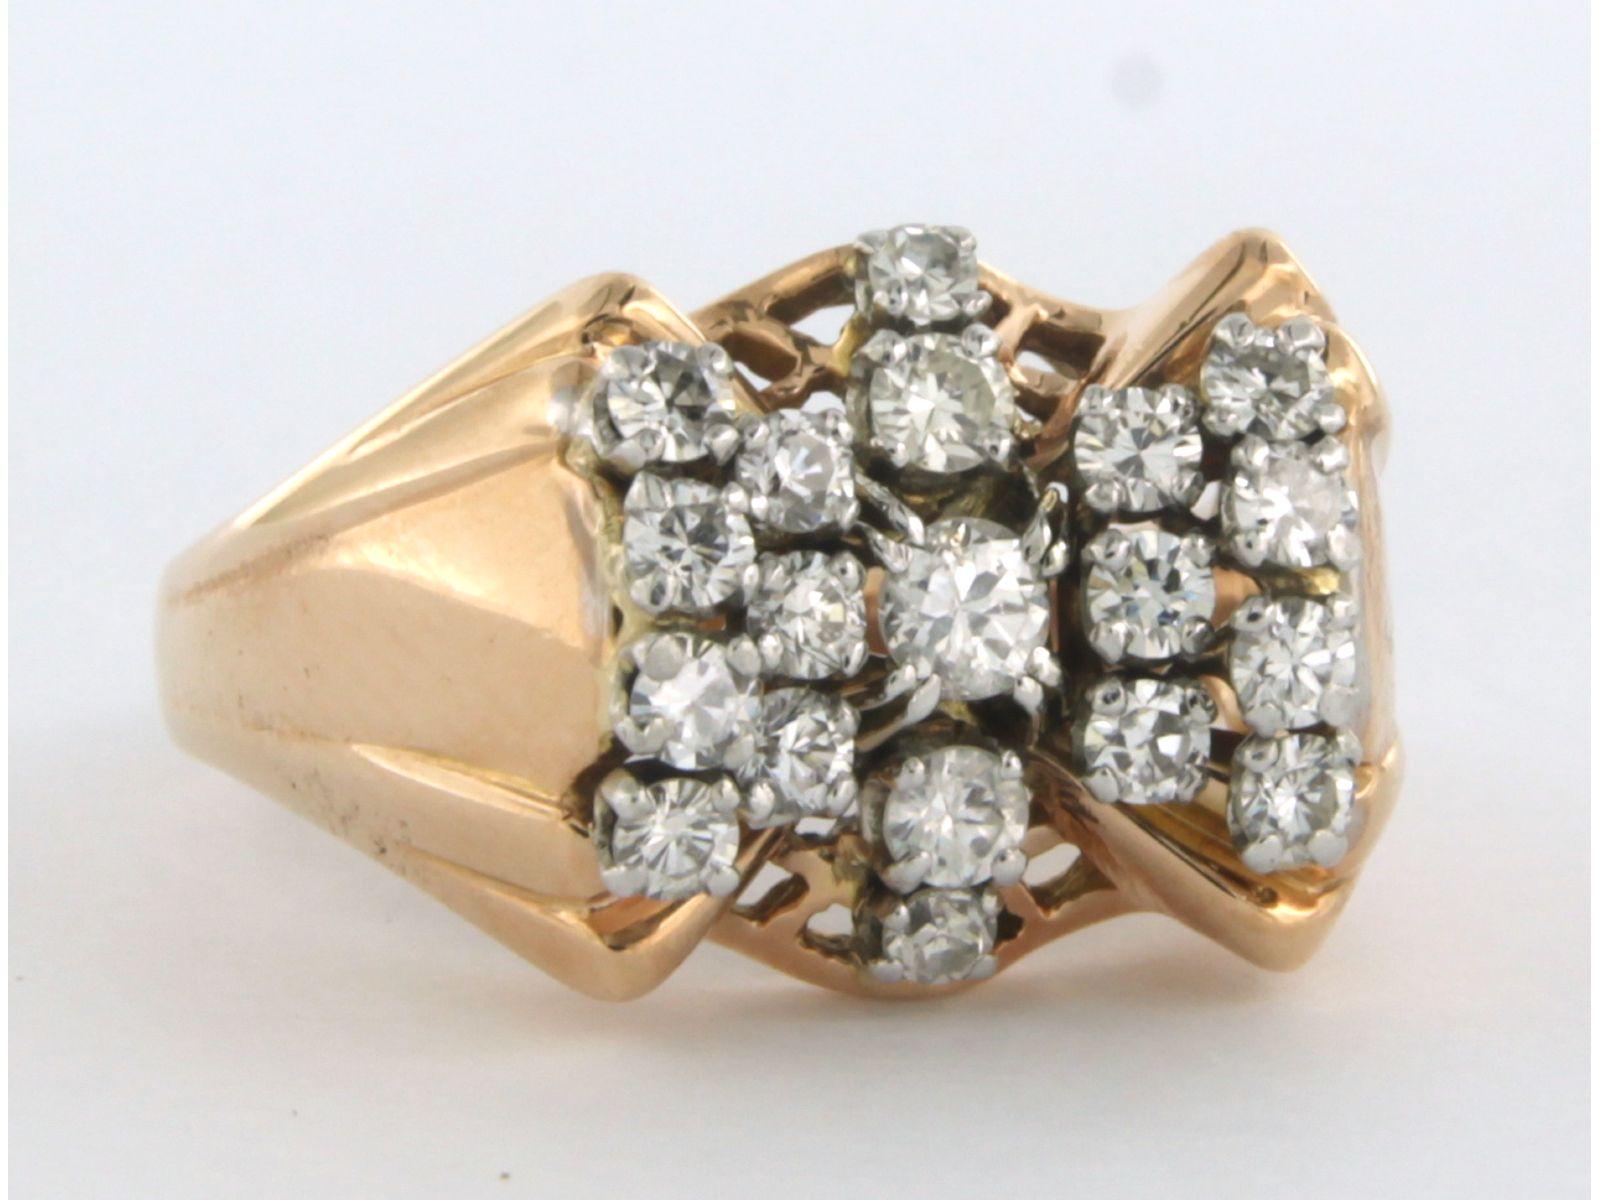 Bague en or bicolore 18 kt sertie de diamants de taille brillant. 0,86 ct - F/G - VS/SI - taille de bague U.S. 7,5  - UE. 17.75(56)

la face avant de l'anneau mesure 1,3 cm de large et 9,0 mm de haut

Taille de la bague : 7,5  - UE. 17.75(56), la